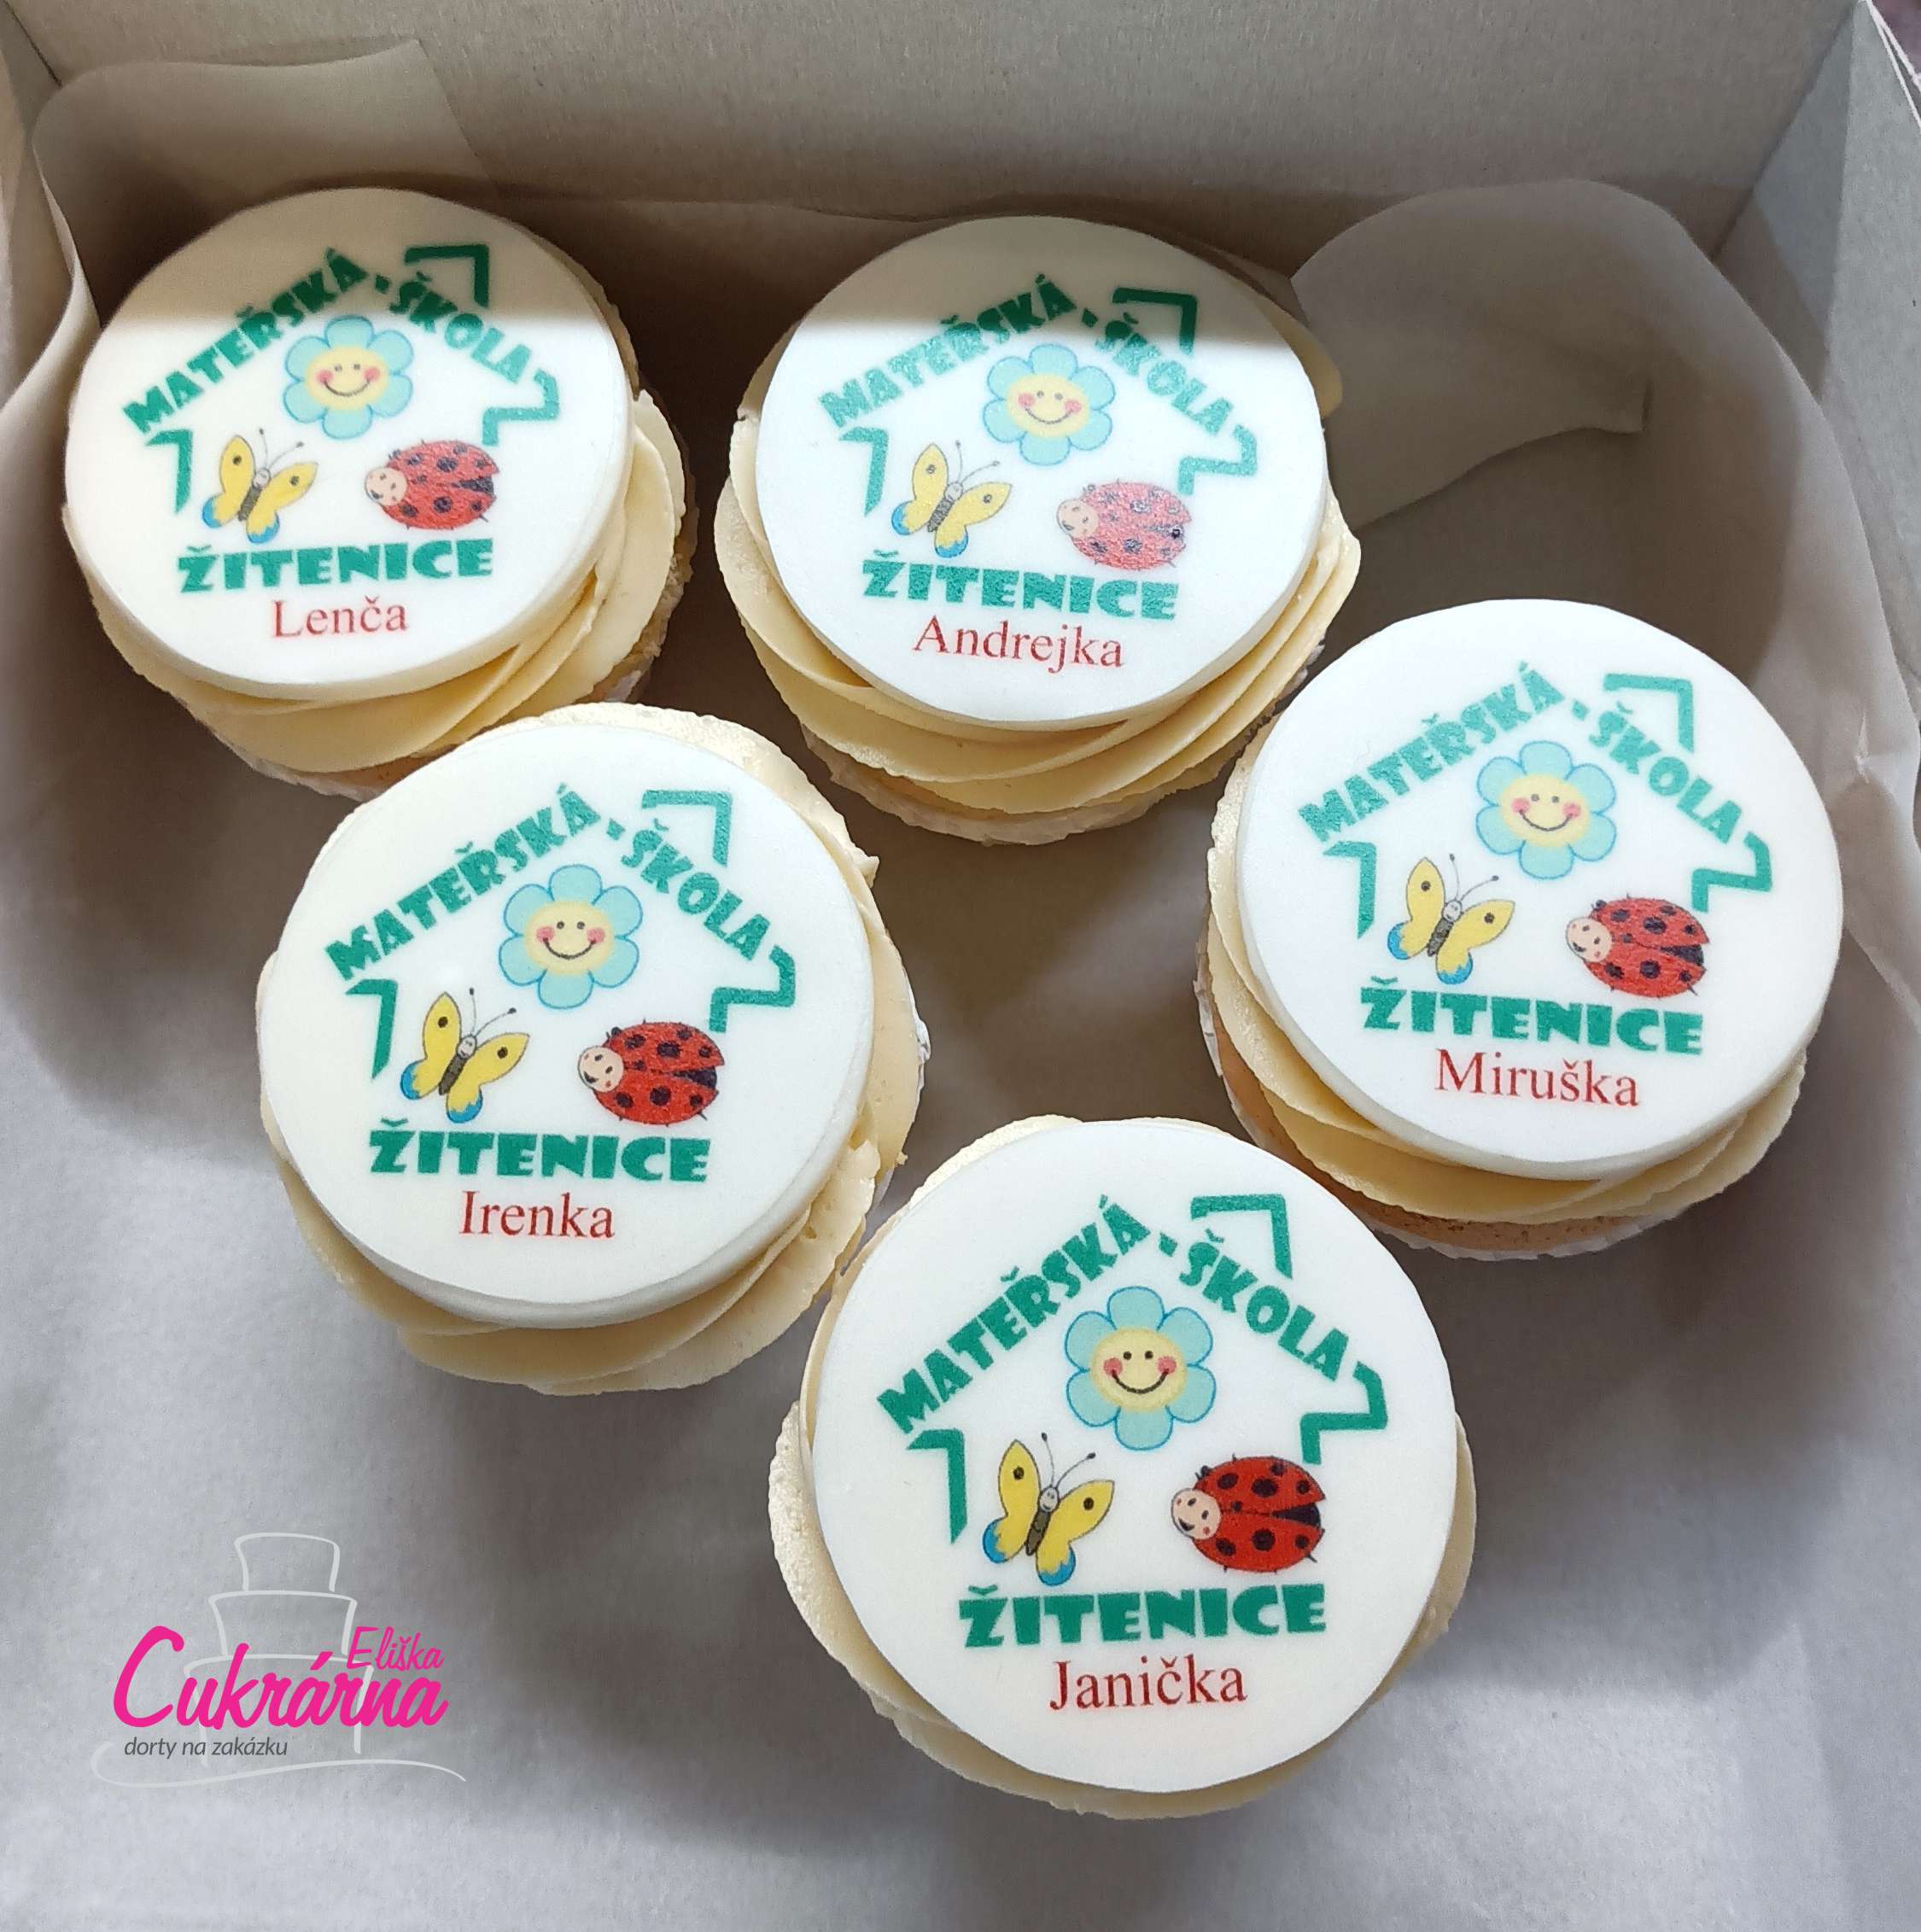 Cupcake FIREMNÍ 1-2